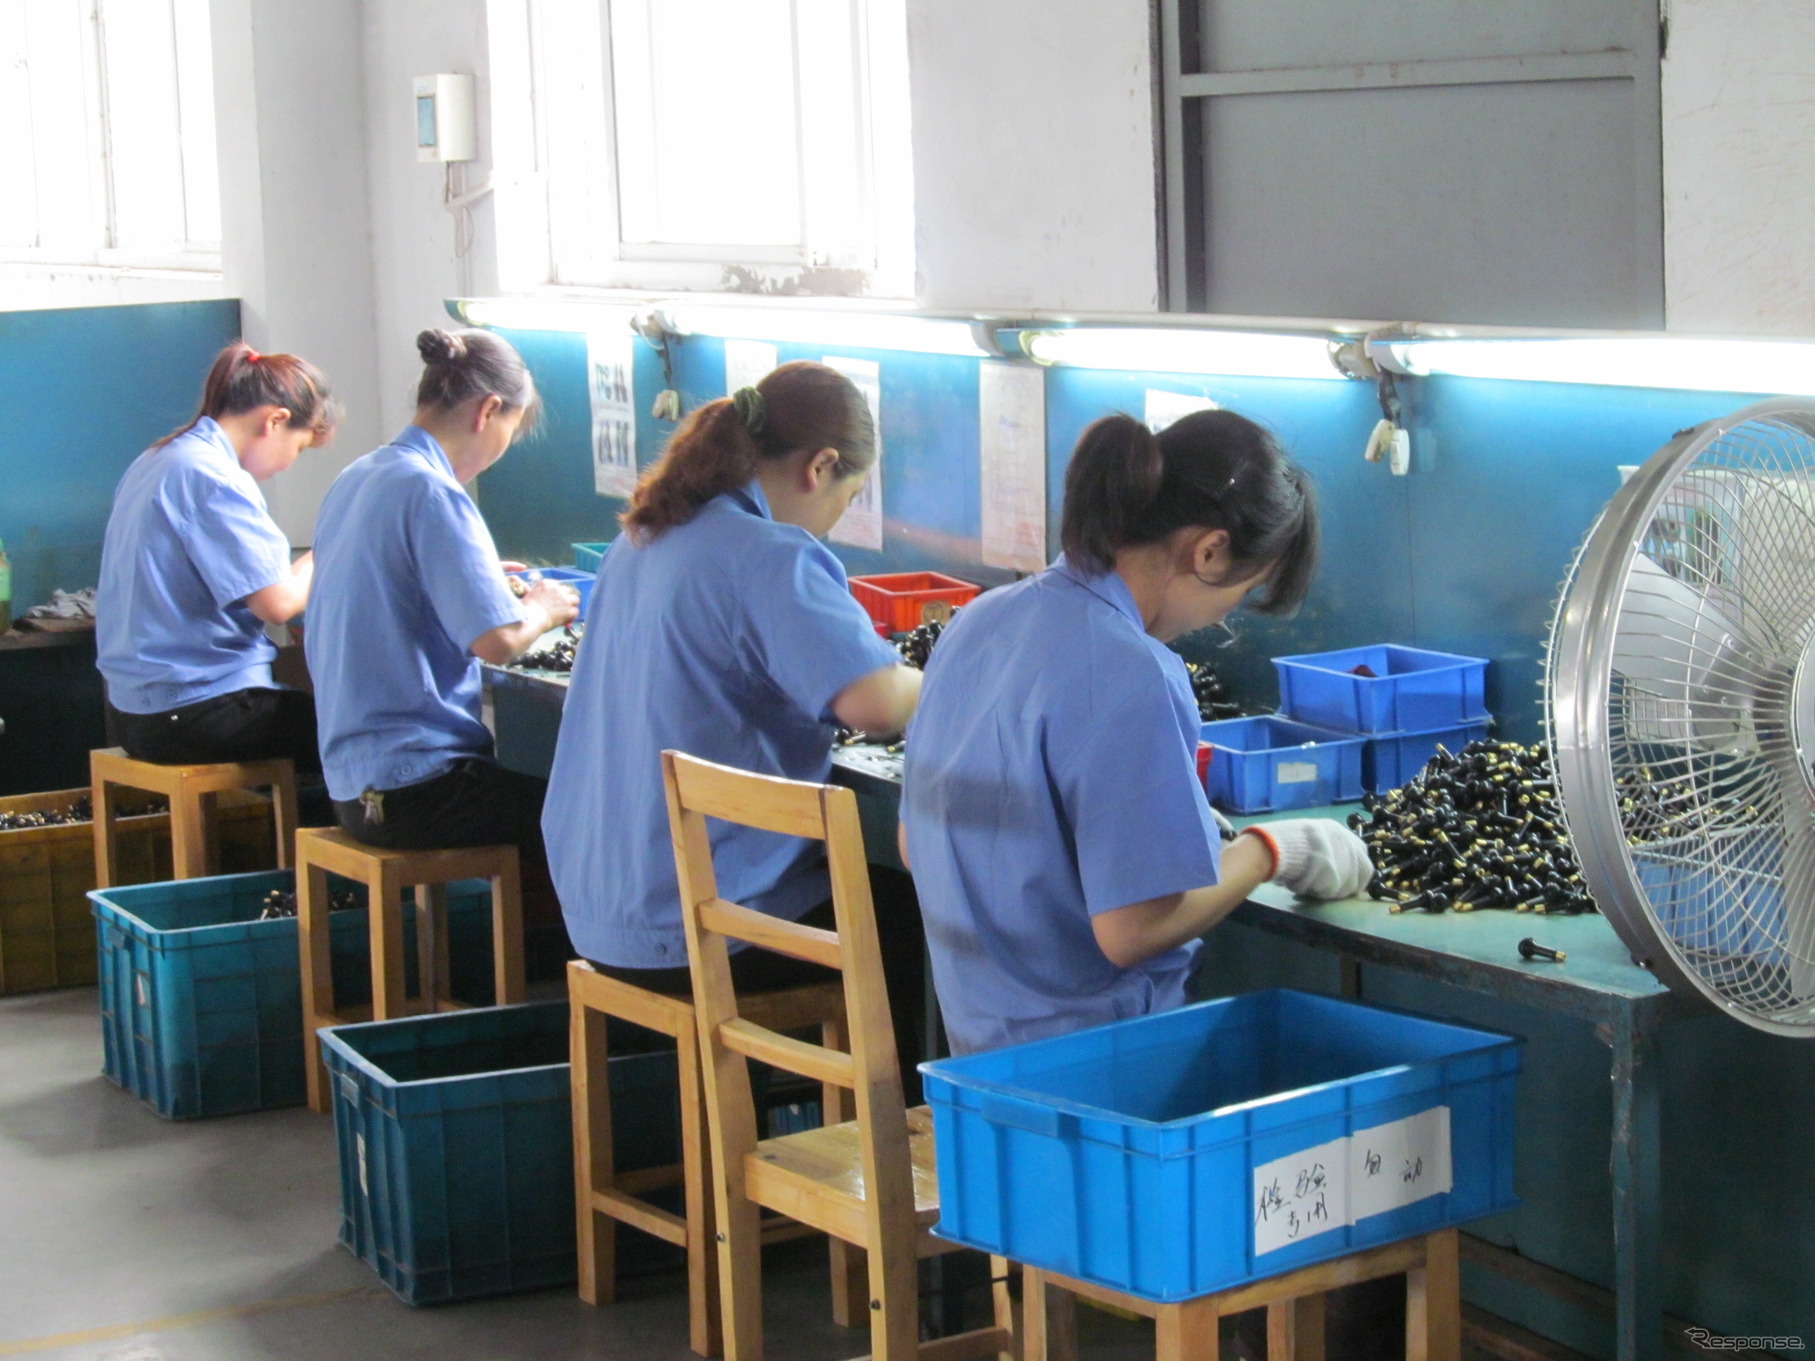 中国の工場で行われている、キズや変形の目視検査